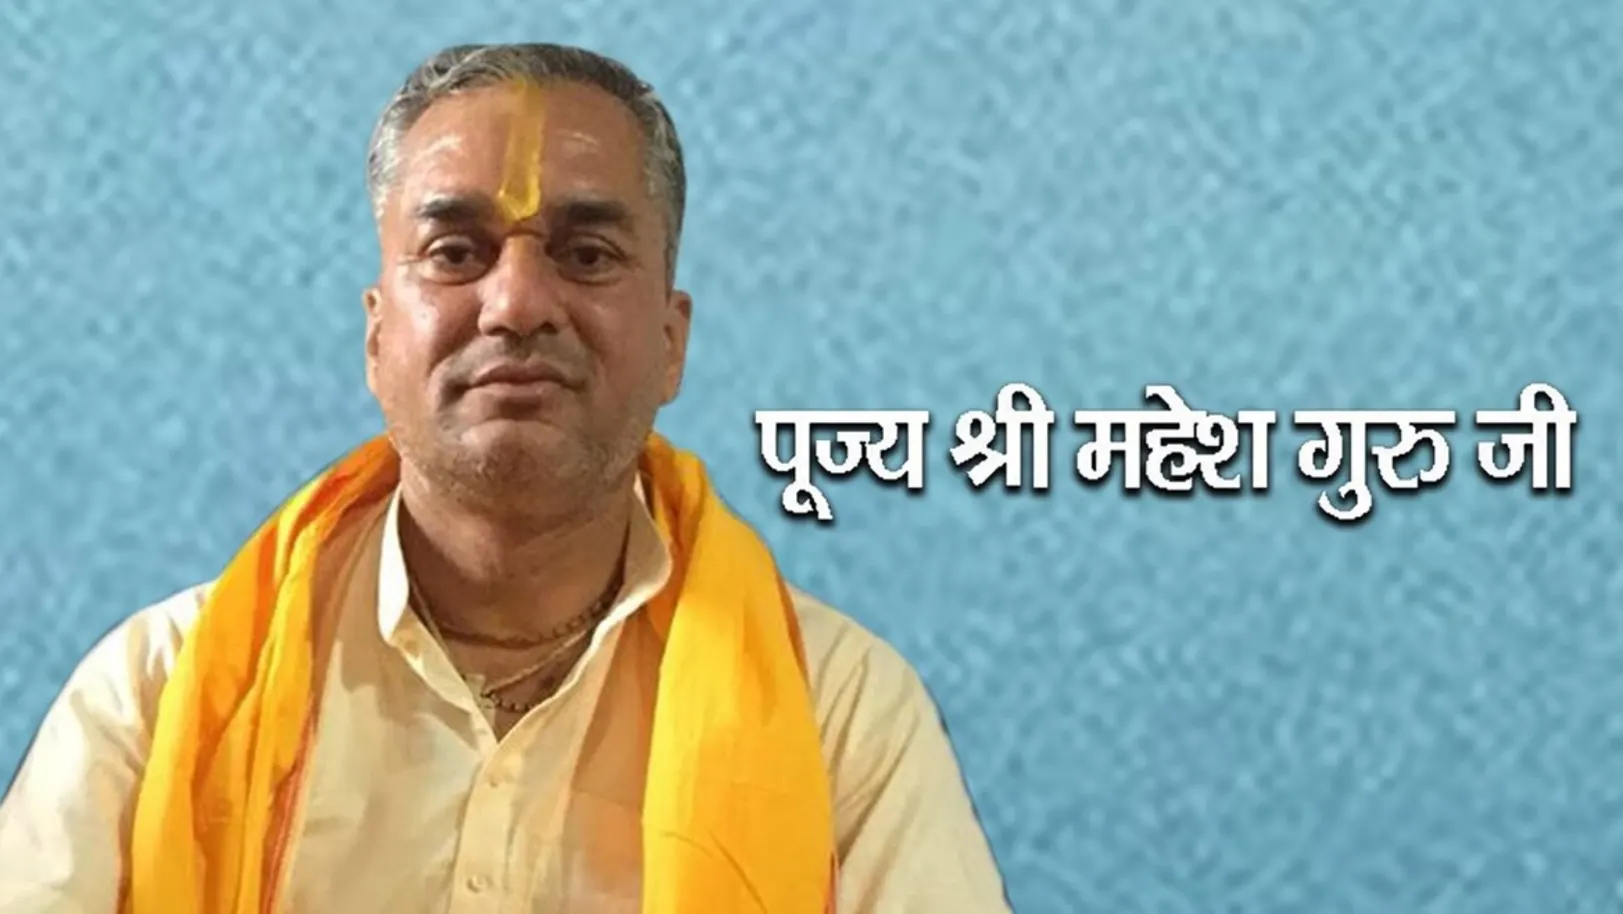 Pujya Mahesh Guru ji Live Streaming Now On Aastha